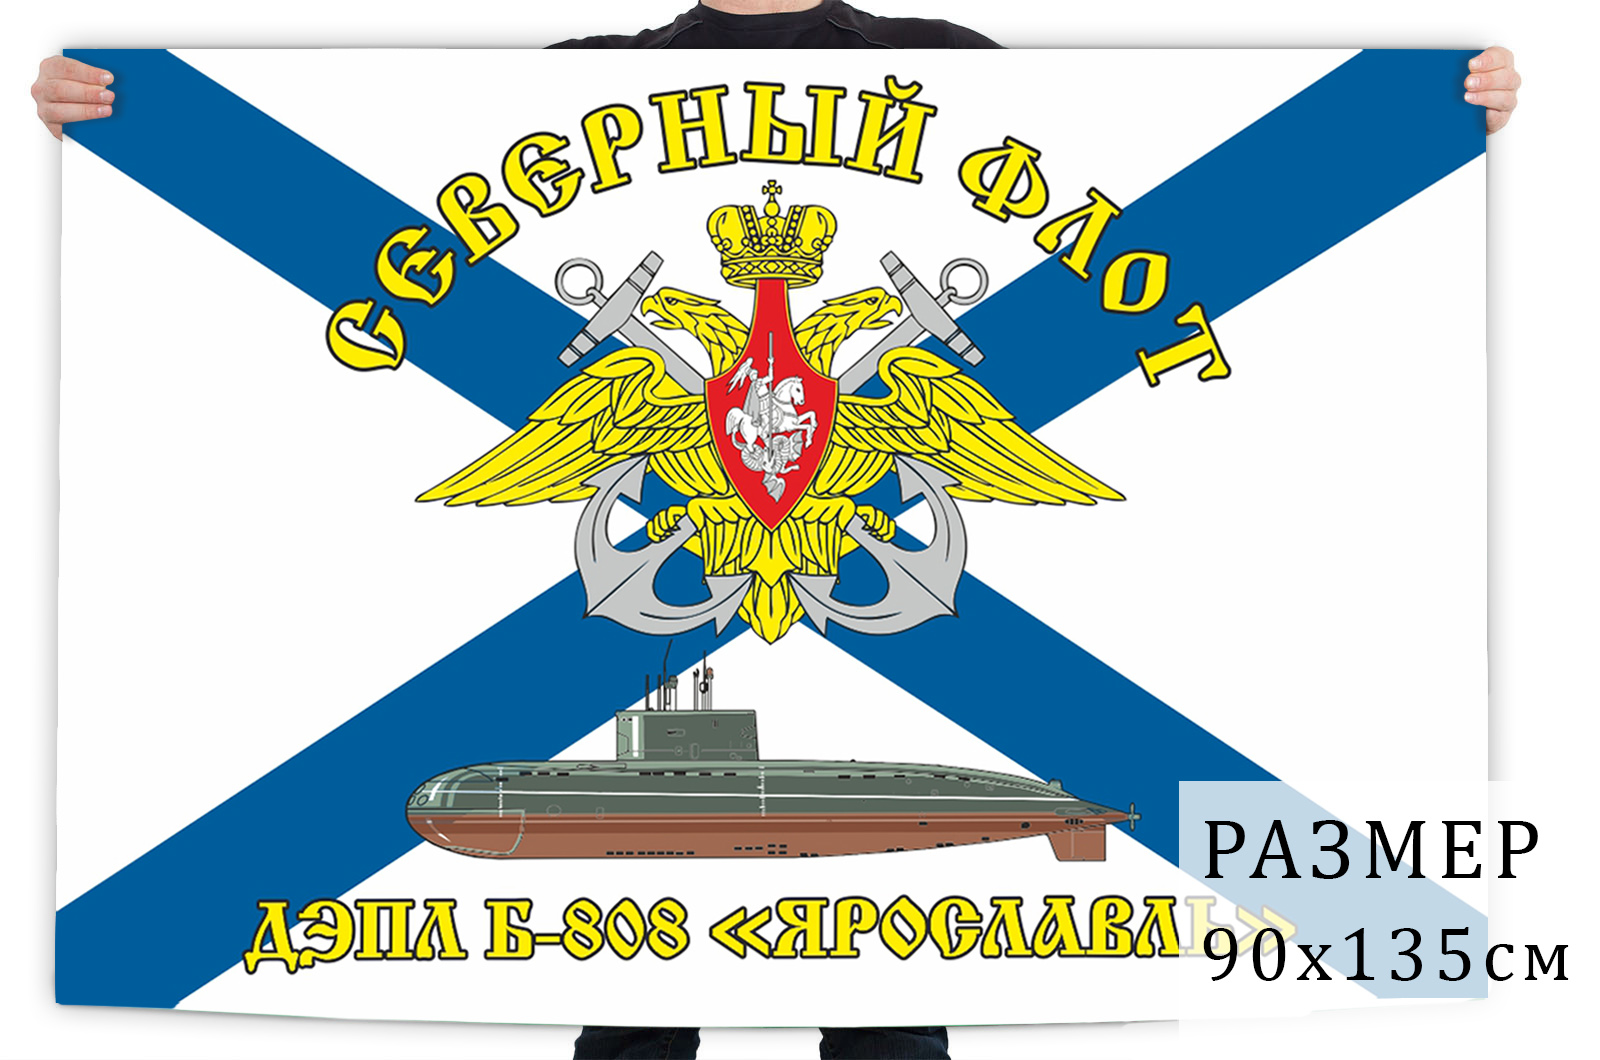 Купить в интернет магазине флаг ВМФ ДЭПЛ Б-808 Ярославль